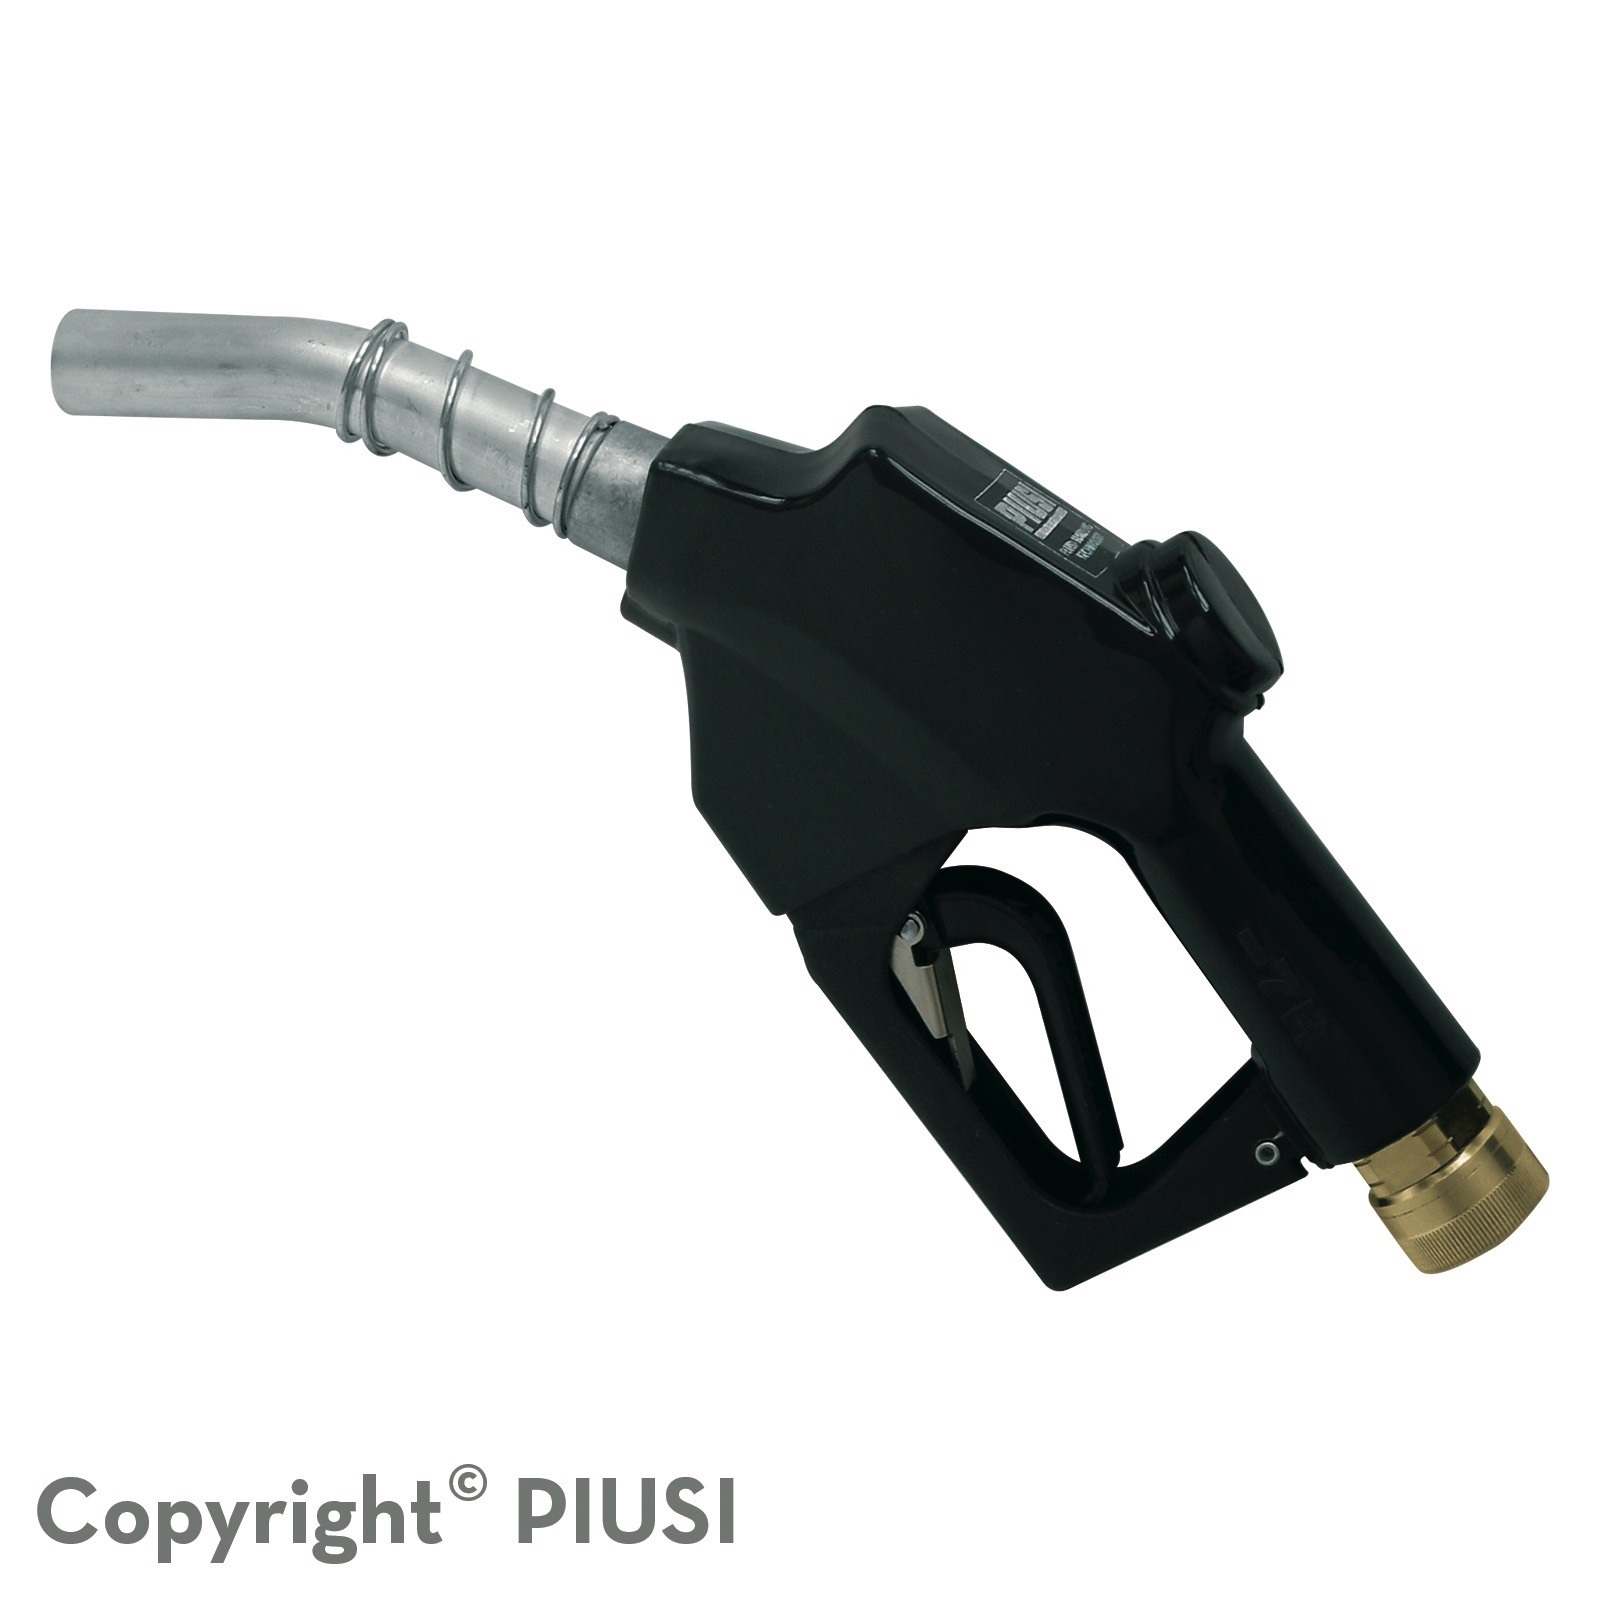 Cò cấp xăng dầu tự động Piusi A120 